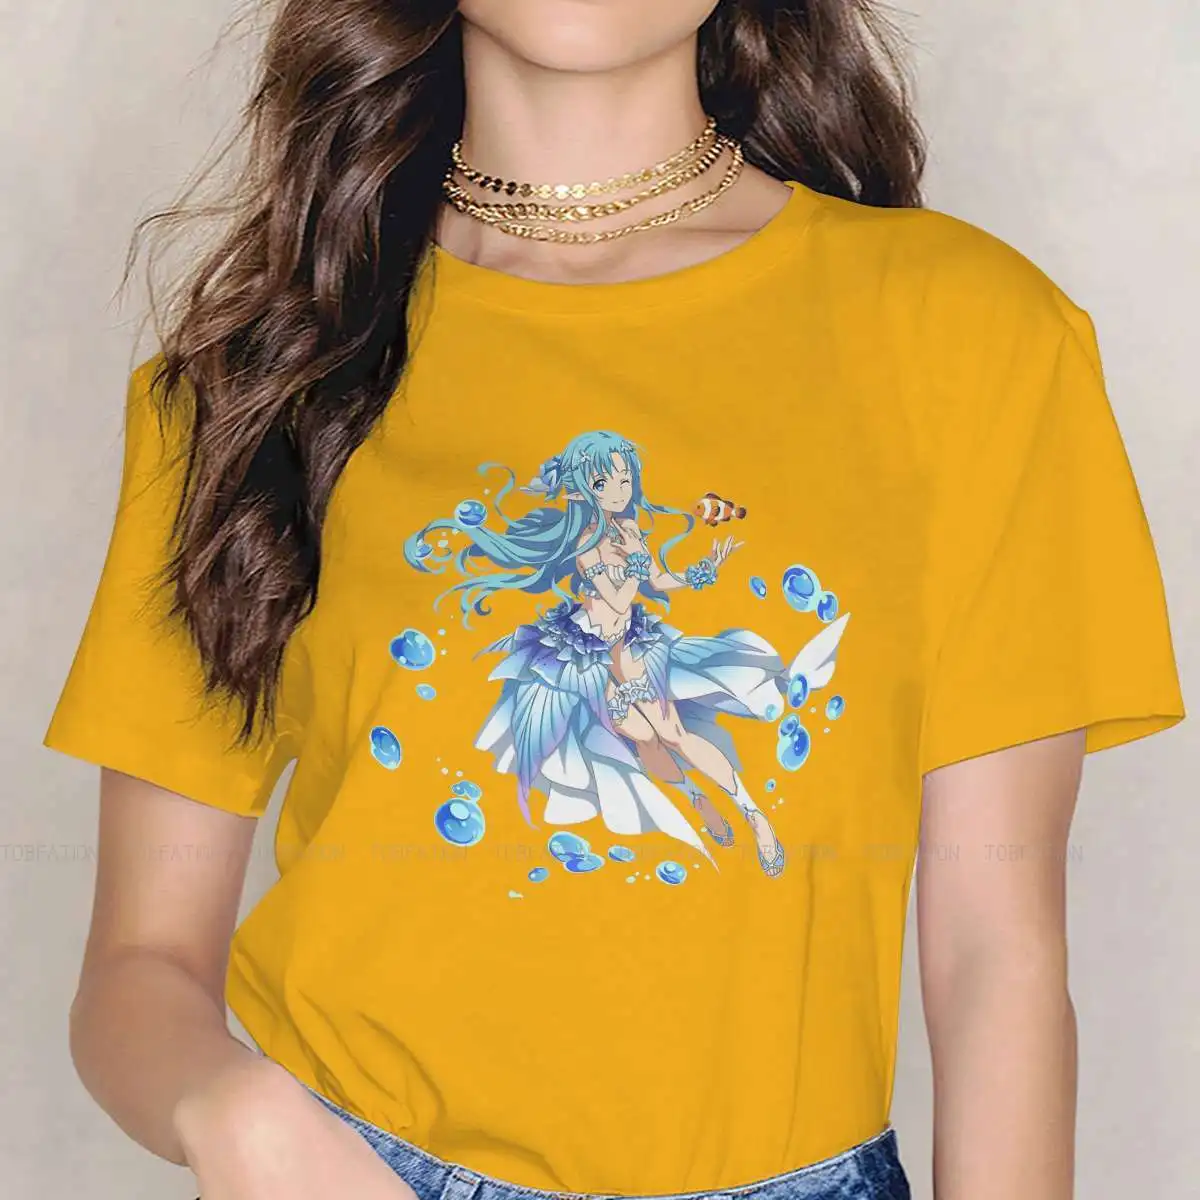 

Asuna Waifu новейшие футболки с изображением меча онлайн игры Виртуальная Девушка Стиль Уличная одежда футболка с круглым вырезом 5XL